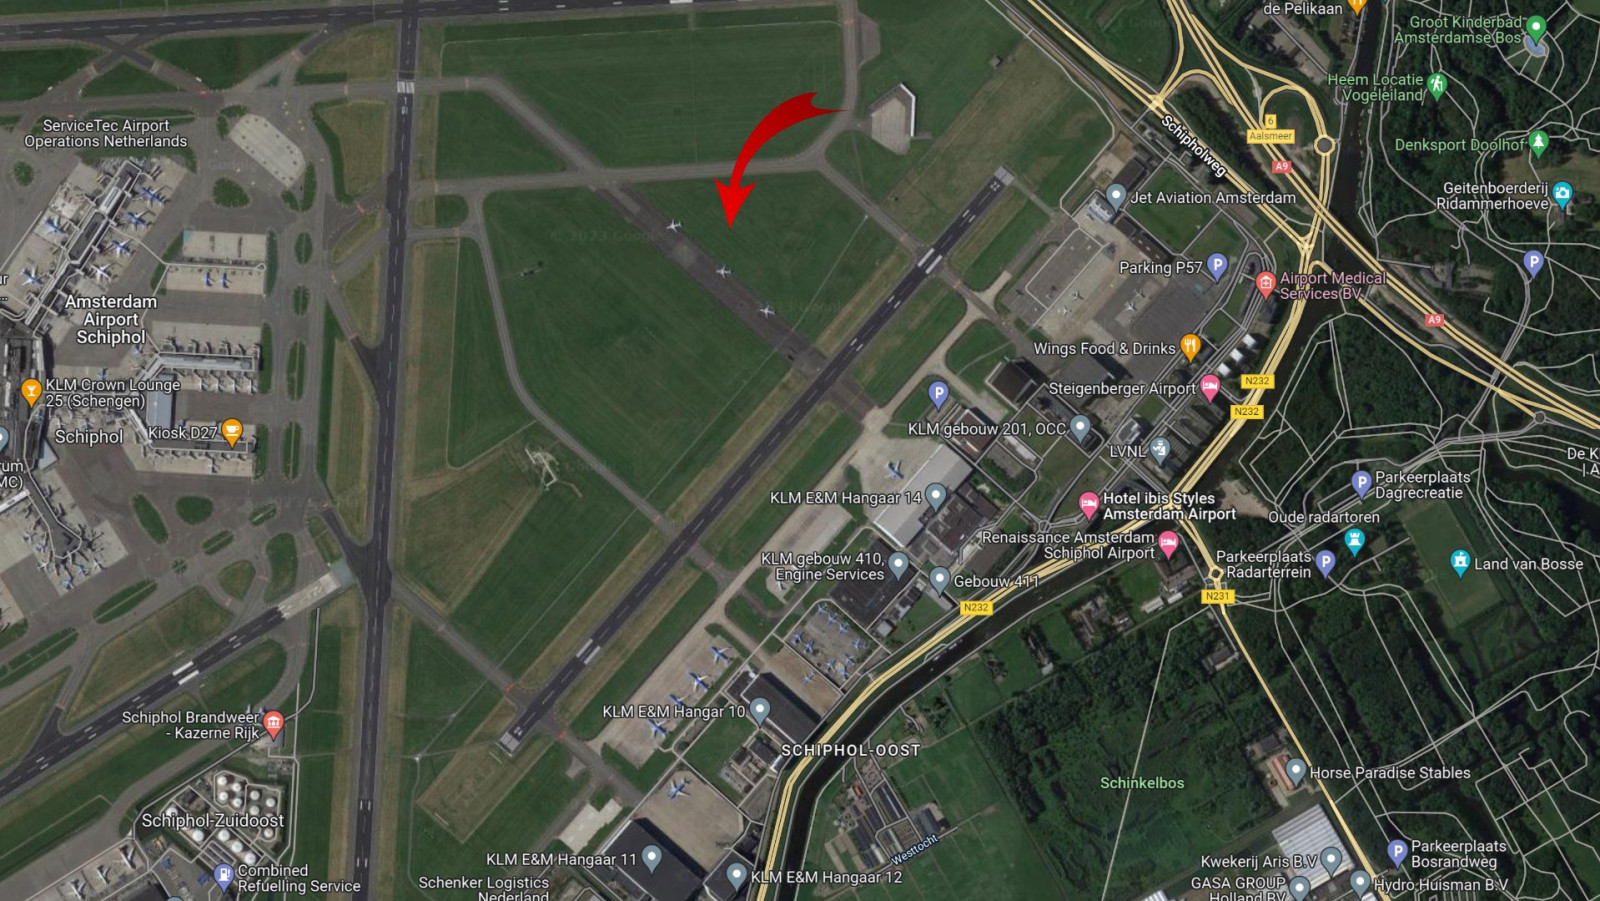 De rode pijl wijst naar de voormalige start- en landingsbaan op Schiphol-Oost